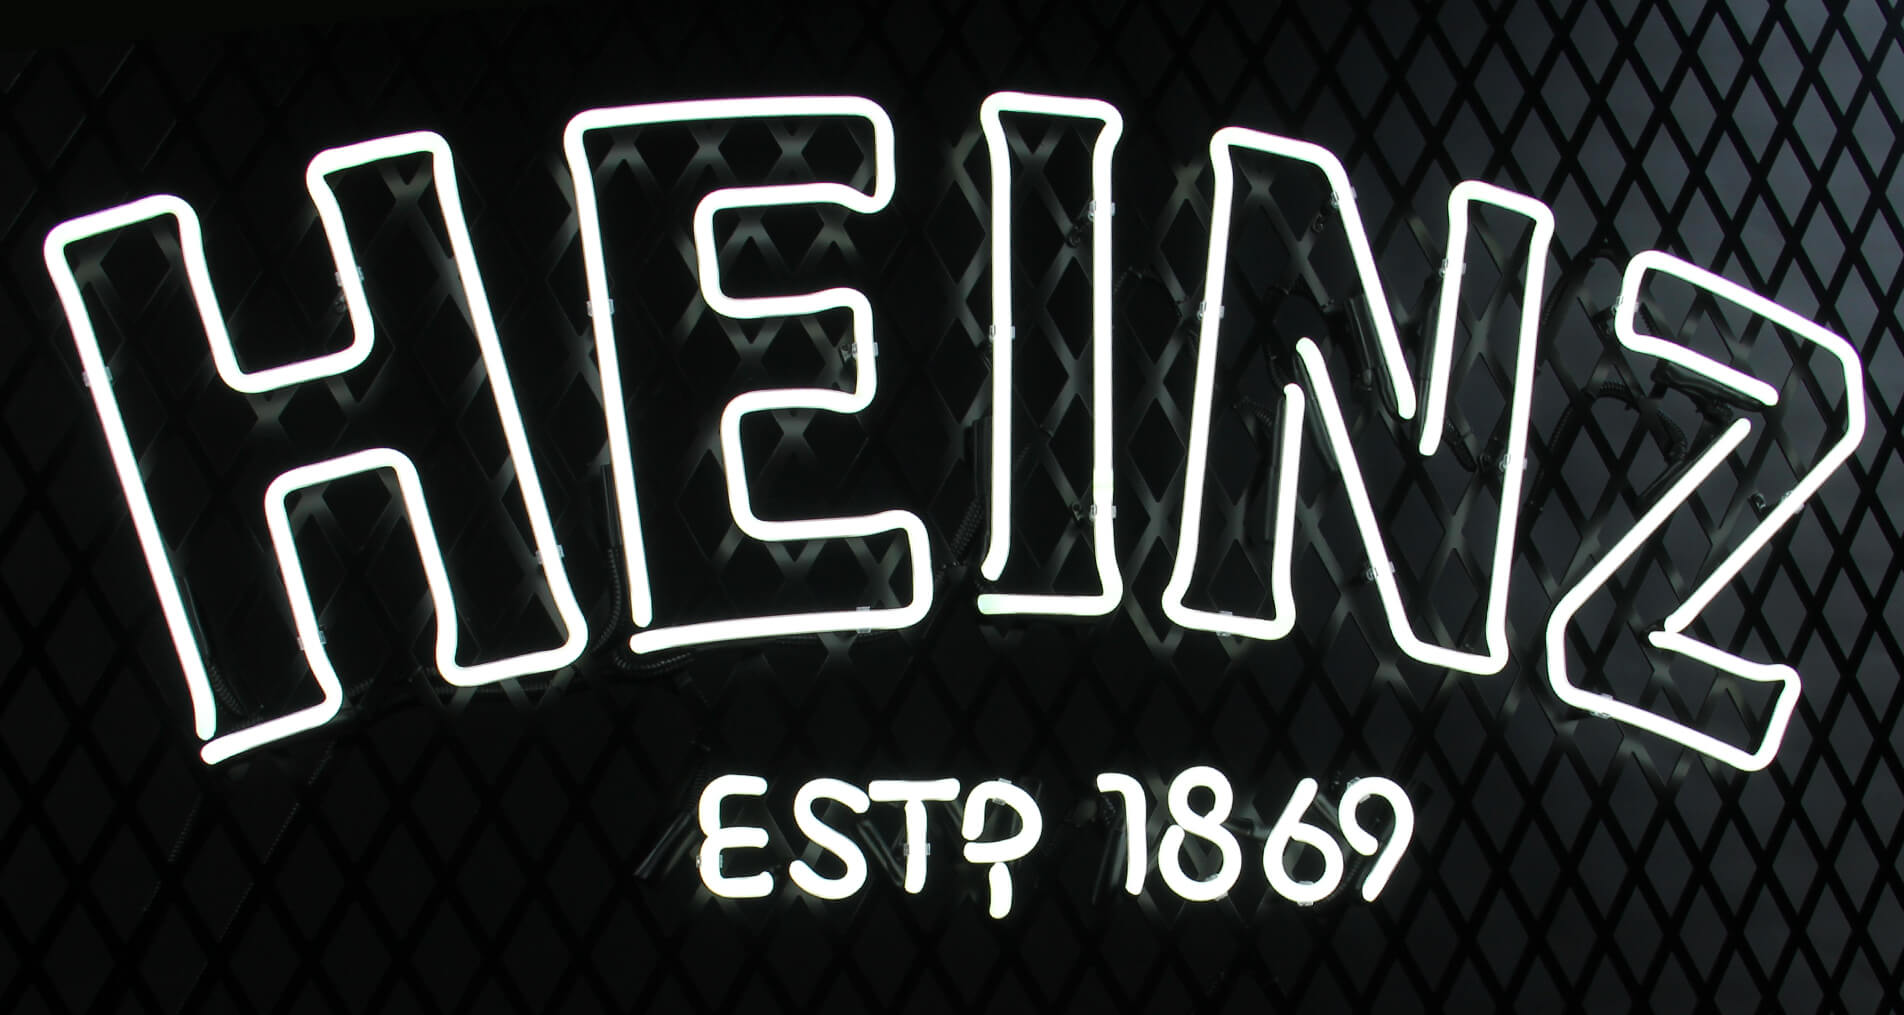 Heinz neon - Néon blanc heinz 1896